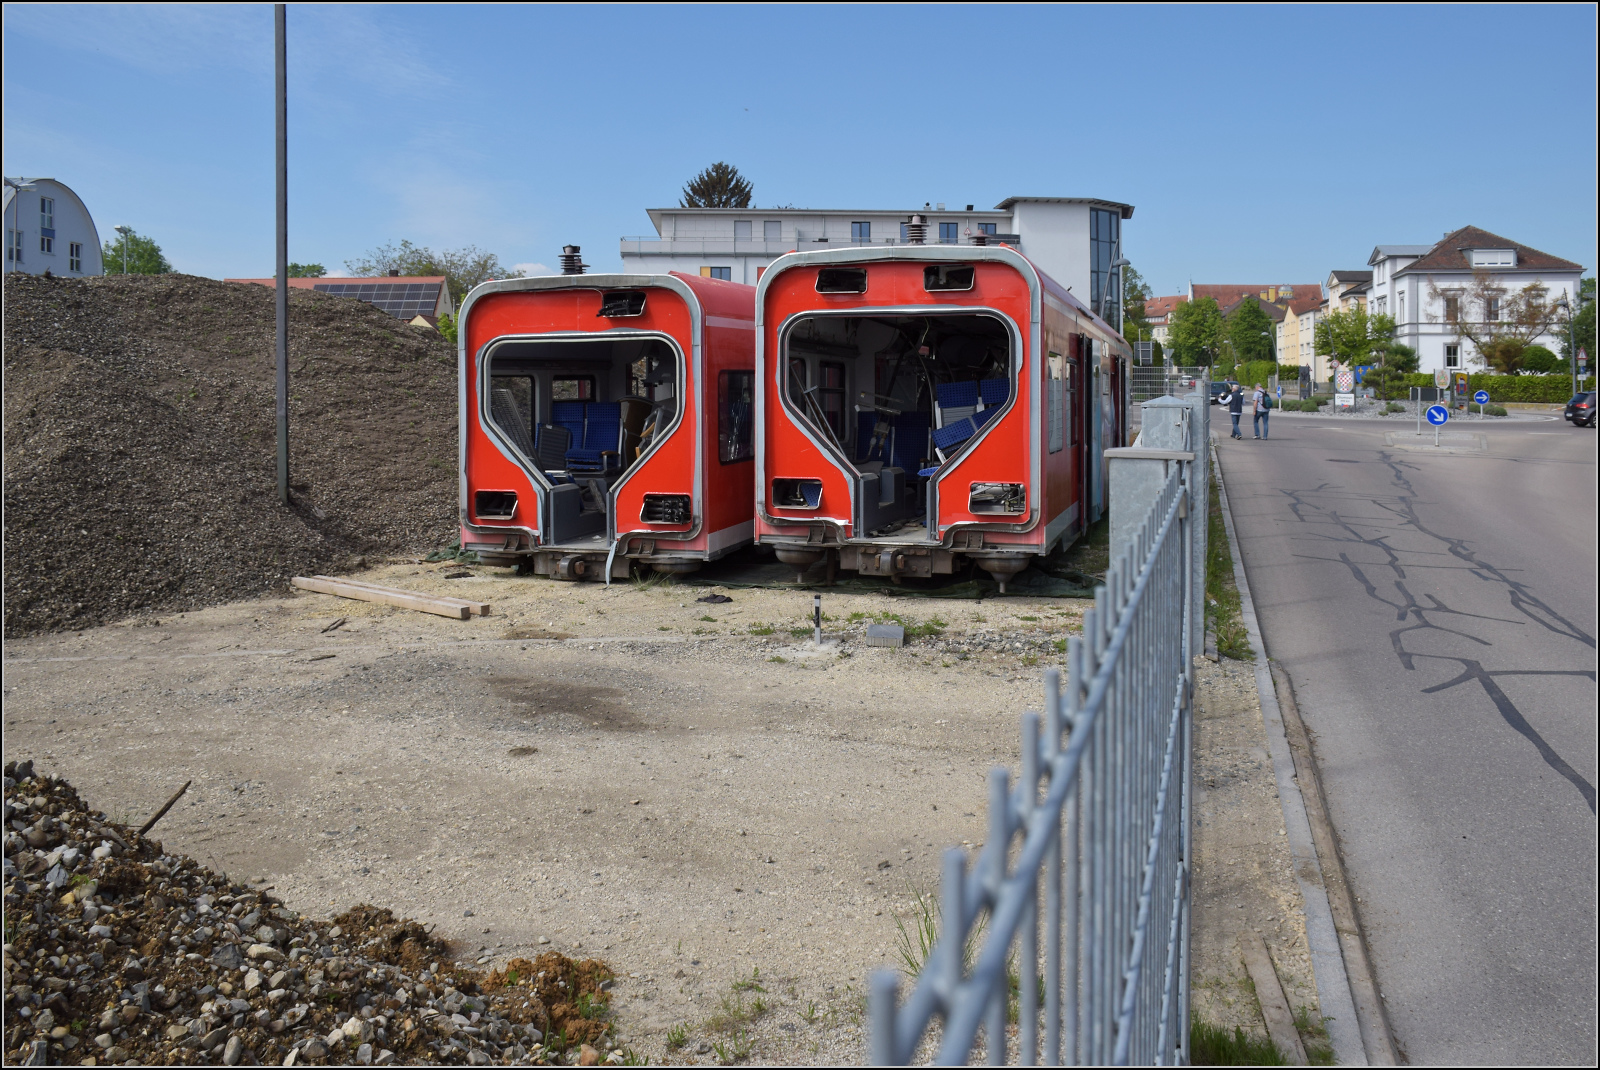 175 Jahre Eisenbahn in Nrdlingen / 55 Jahre Bayrisches Eisenbahnmuseum.

Offenbar haben sich zwei Mittelteile eines 425 auf das Gelnde des Museums verirrt. Mai 2024. 